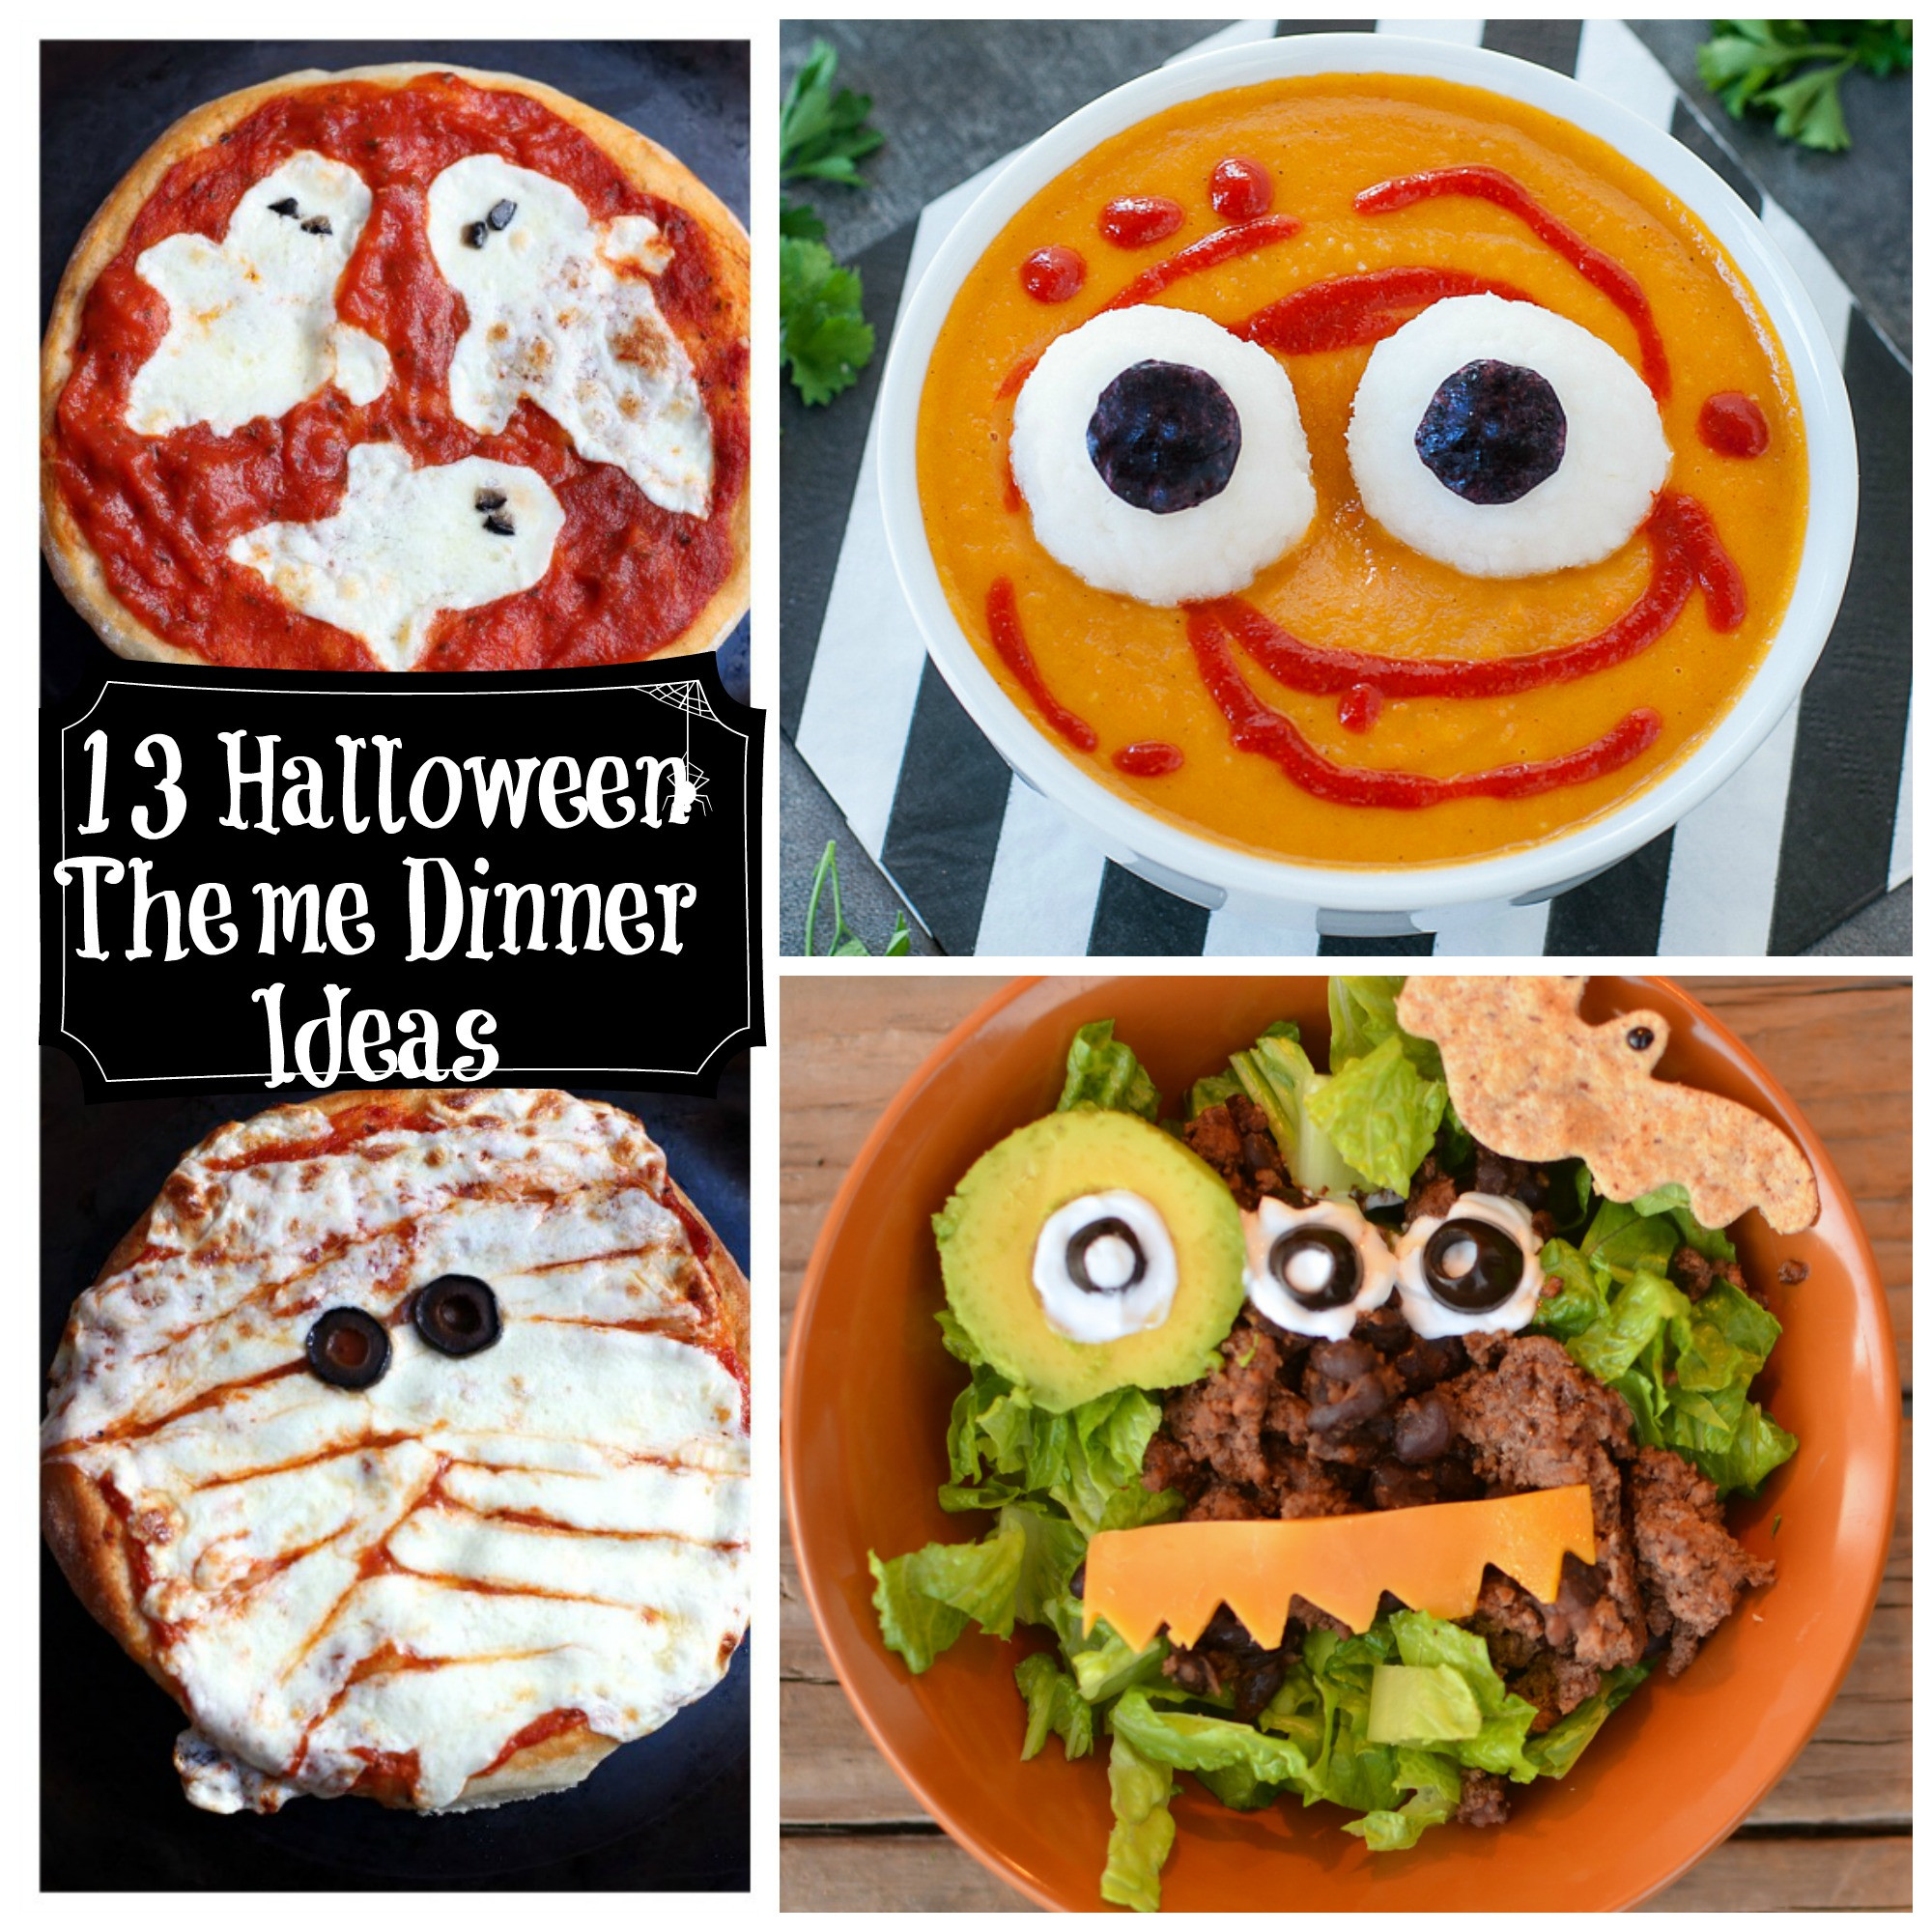 Halloween Dinner Ideas For Kids
 13 Healthy Halloween Themed Dinner Ideas